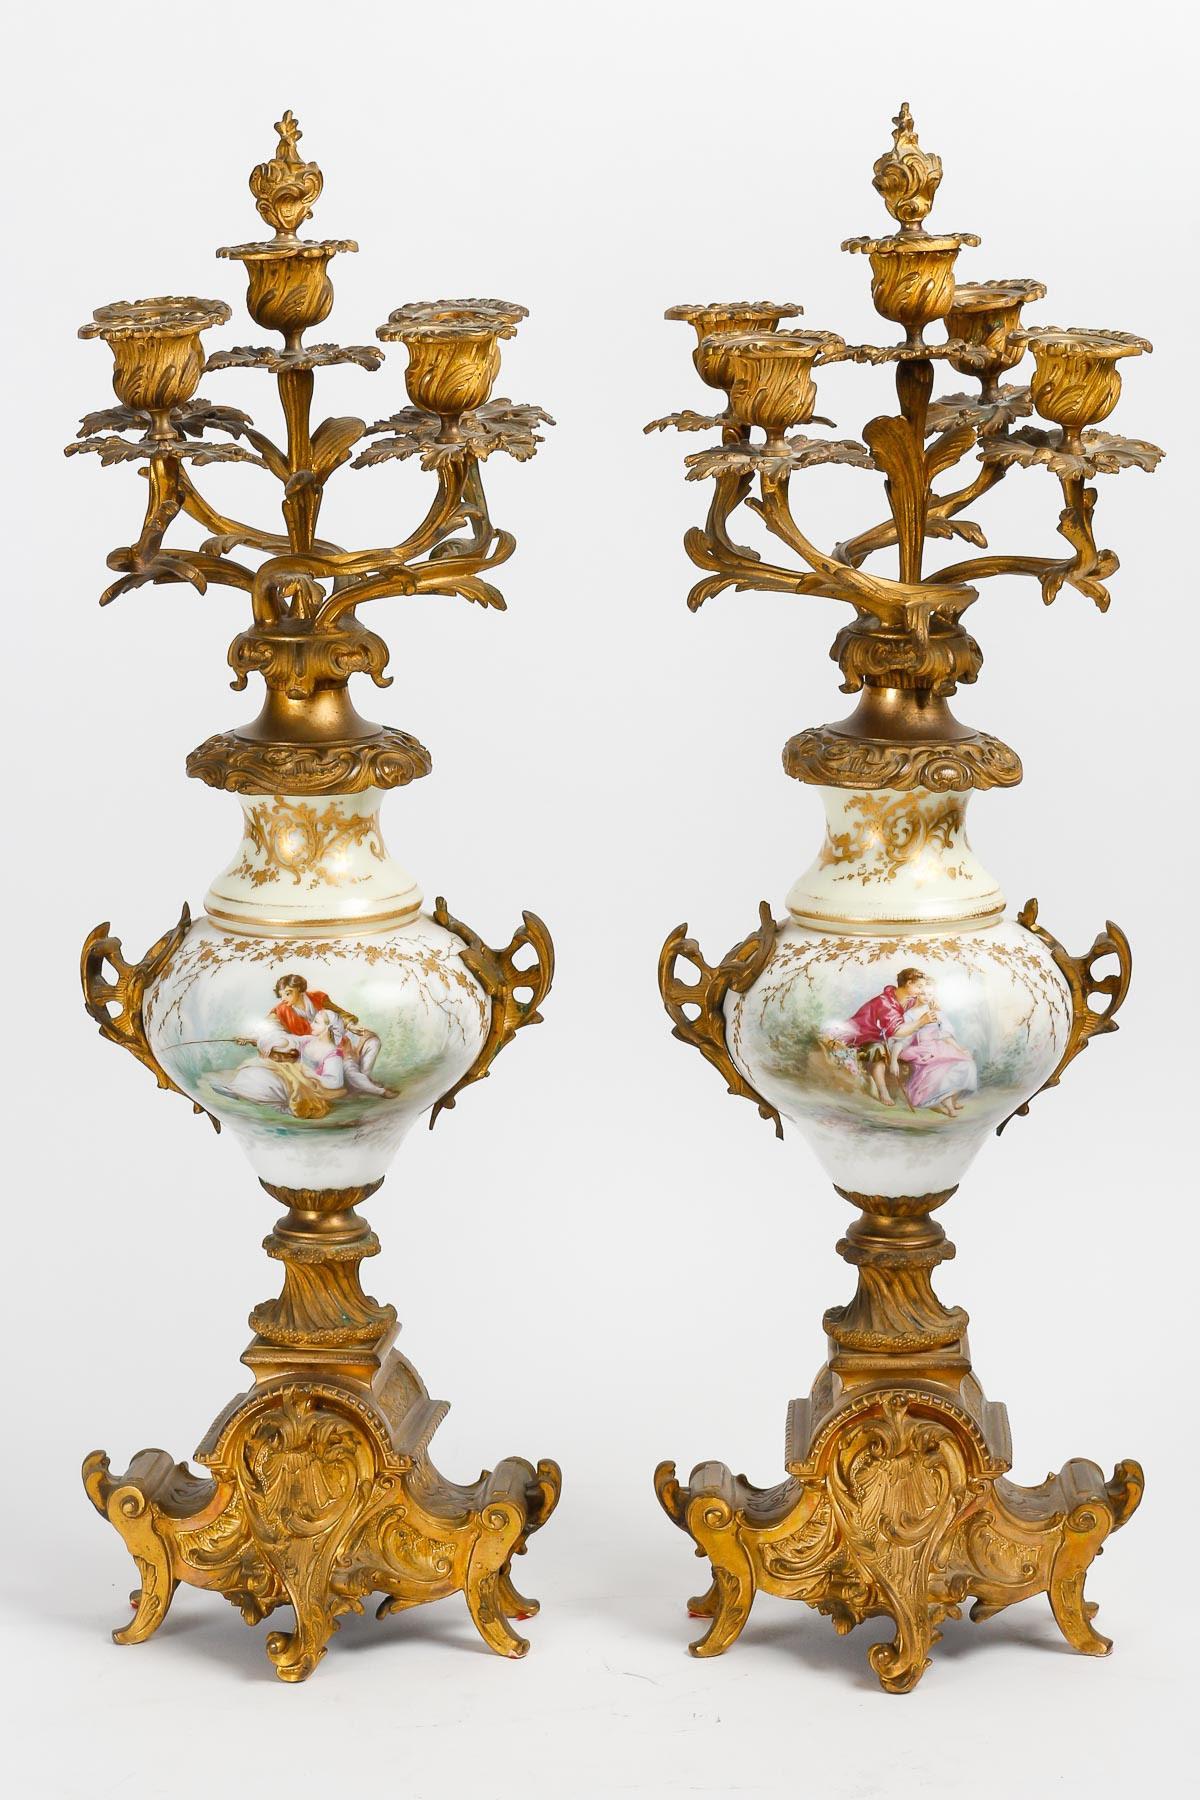 Porzellanset aus Sèvres, 19. Jahrhundert.

Originaler Kaminsims aus Sèvres-Porzellan und vergoldeter Bronze aus dem 19. Jahrhundert, bestehend aus einer Uhr und den beiden dazugehörigen Kandelabern. Ermöglichen Sie den Neustart des Uhrwerks.
Uhr: H: